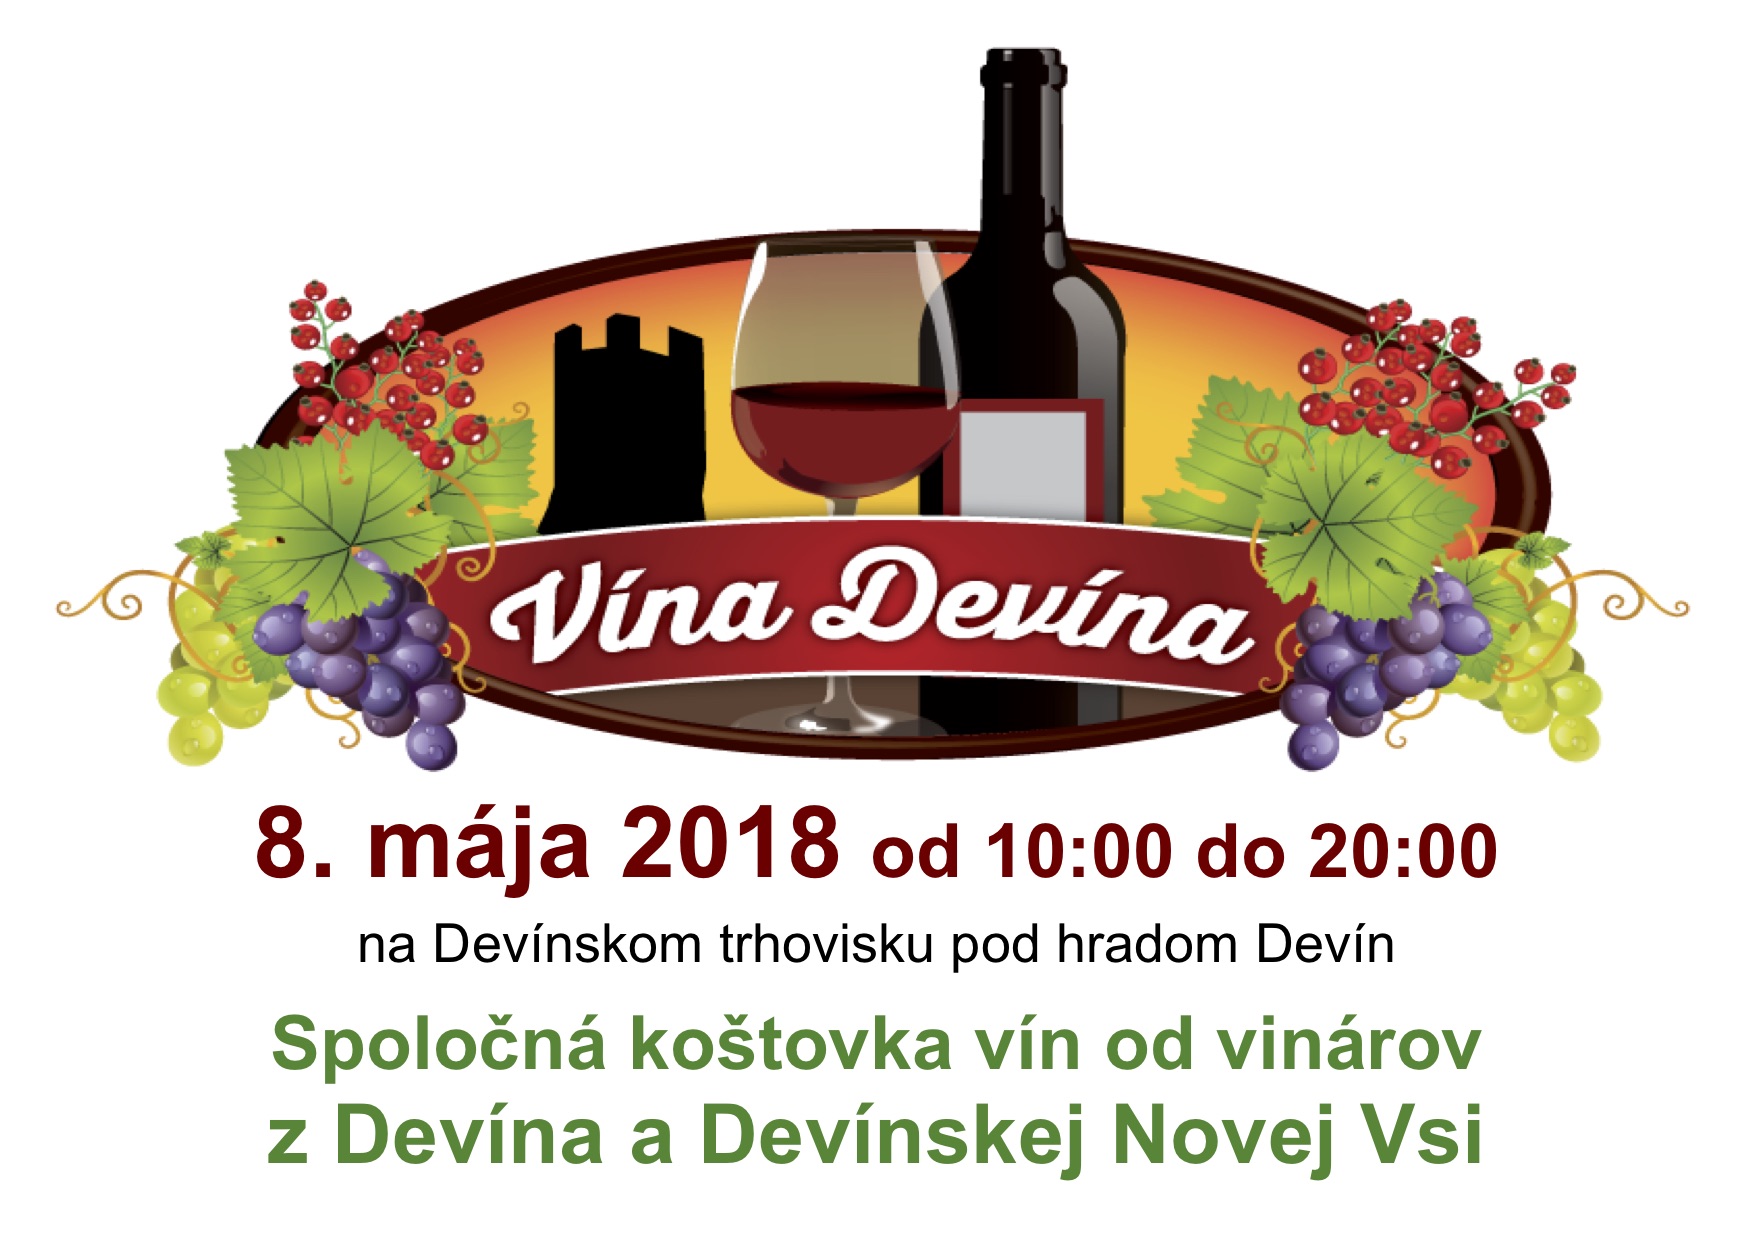 Spolon kotovka vn od vinrov z Devna a Devnskej Novej Vsi 2018 pod hradom Devn